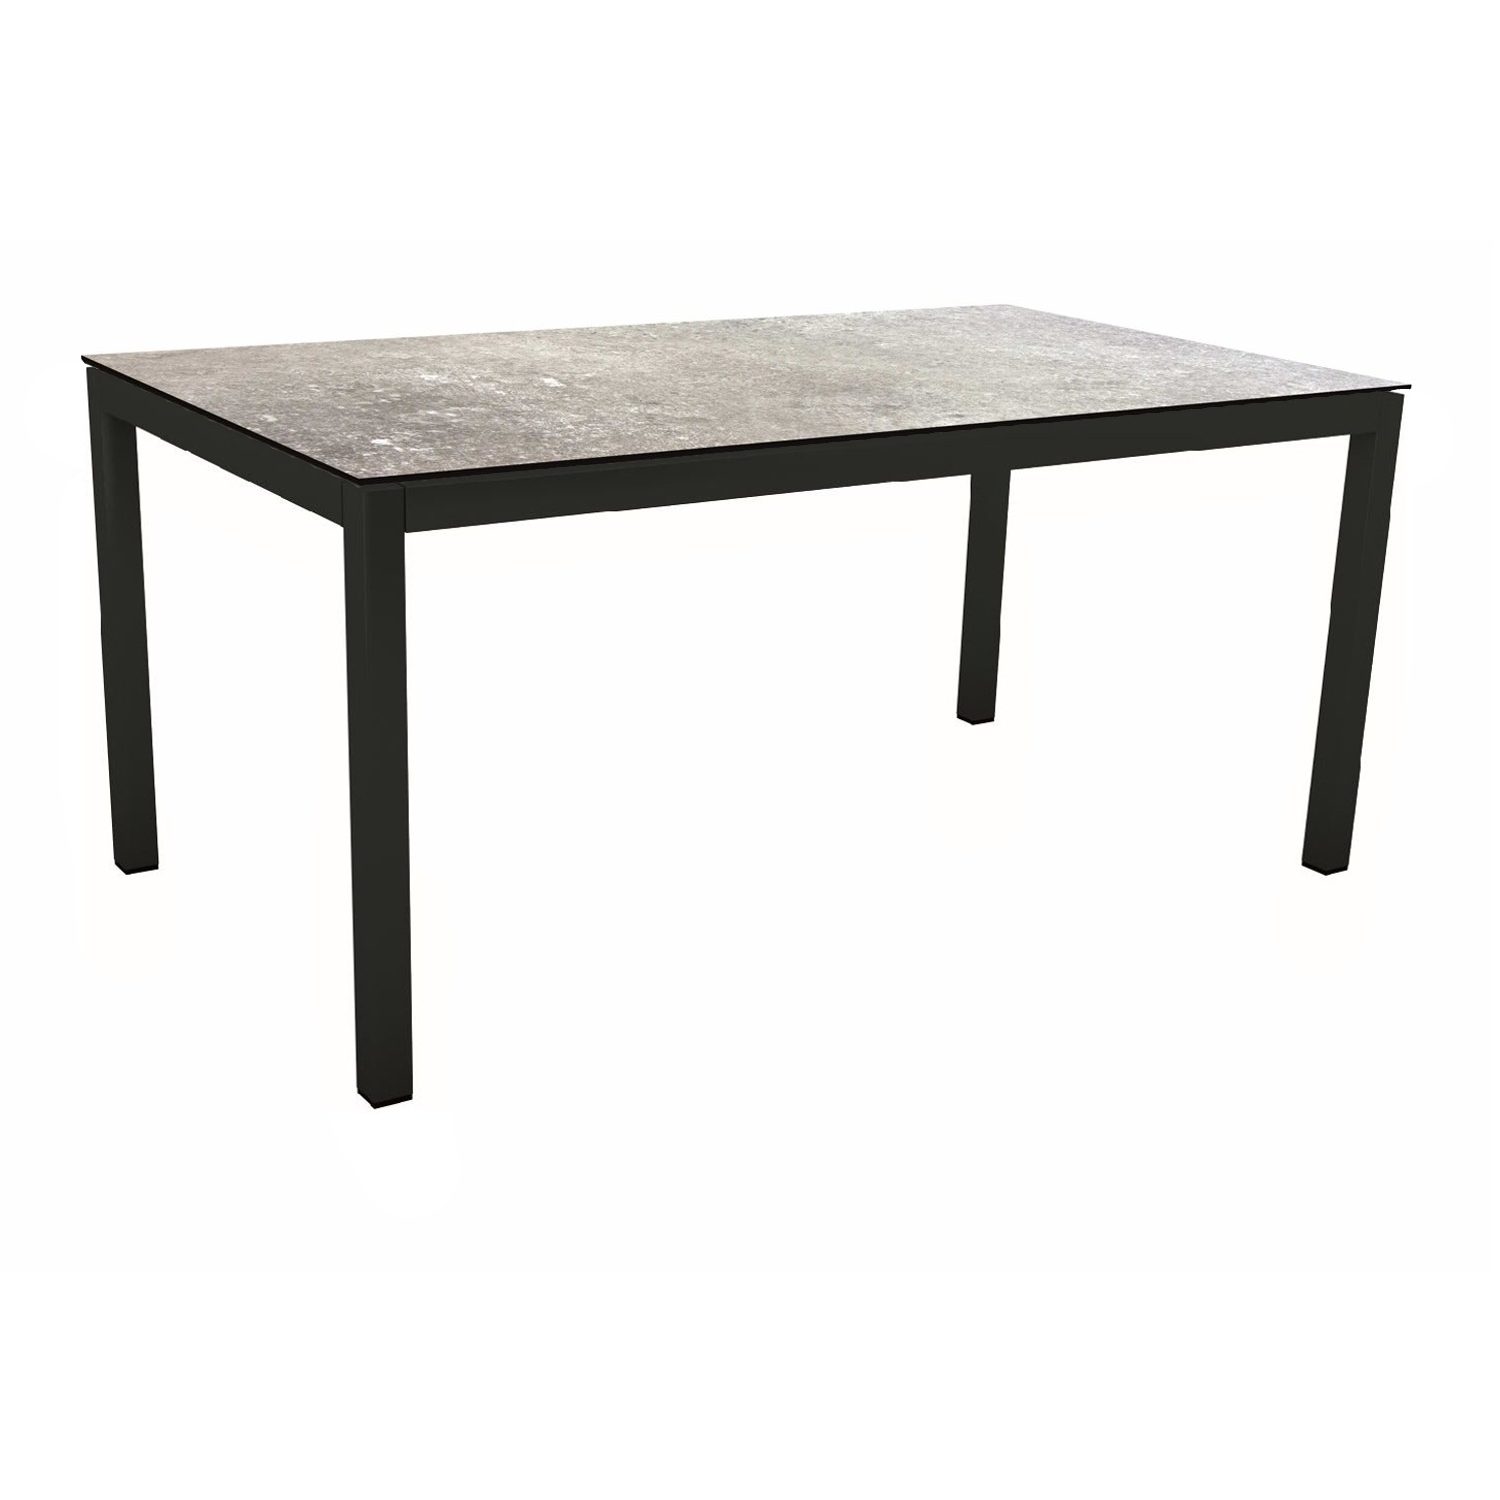 Stern Gartentisch, Gestell Aluminium schwarz matt, Tischplatte HPL Vintage Stone, 160x90 cm